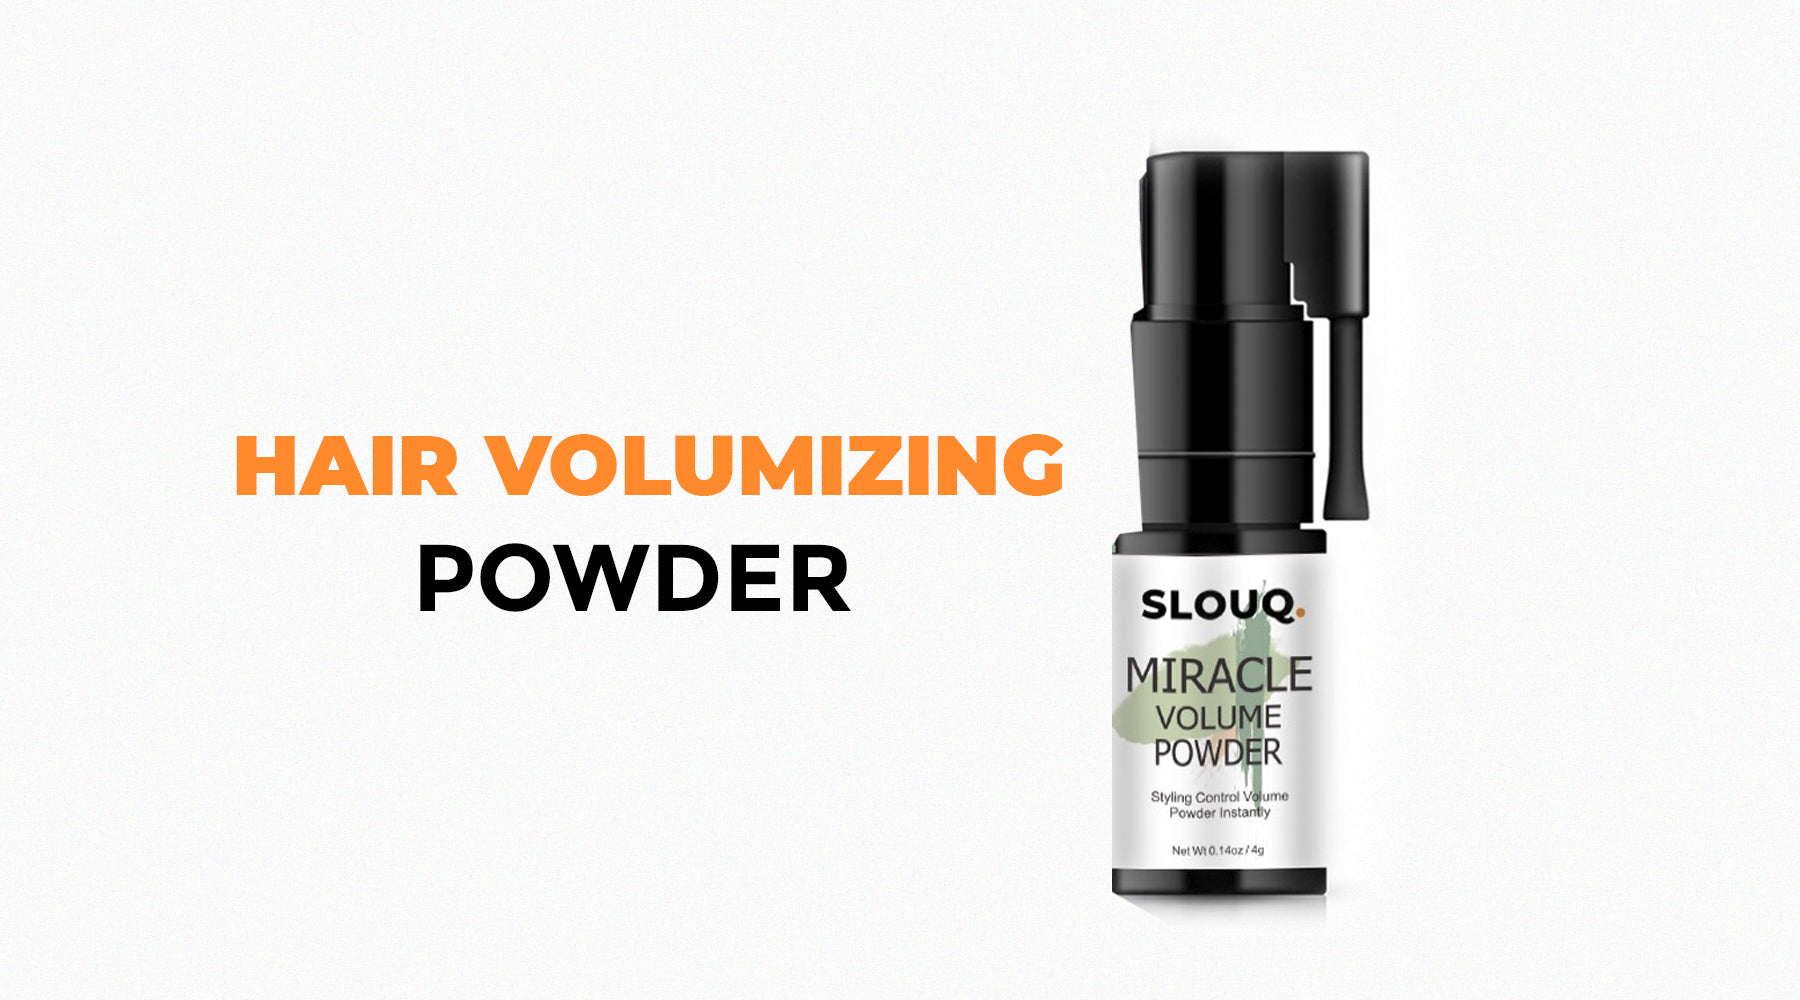 Slouq hair volumizing powder